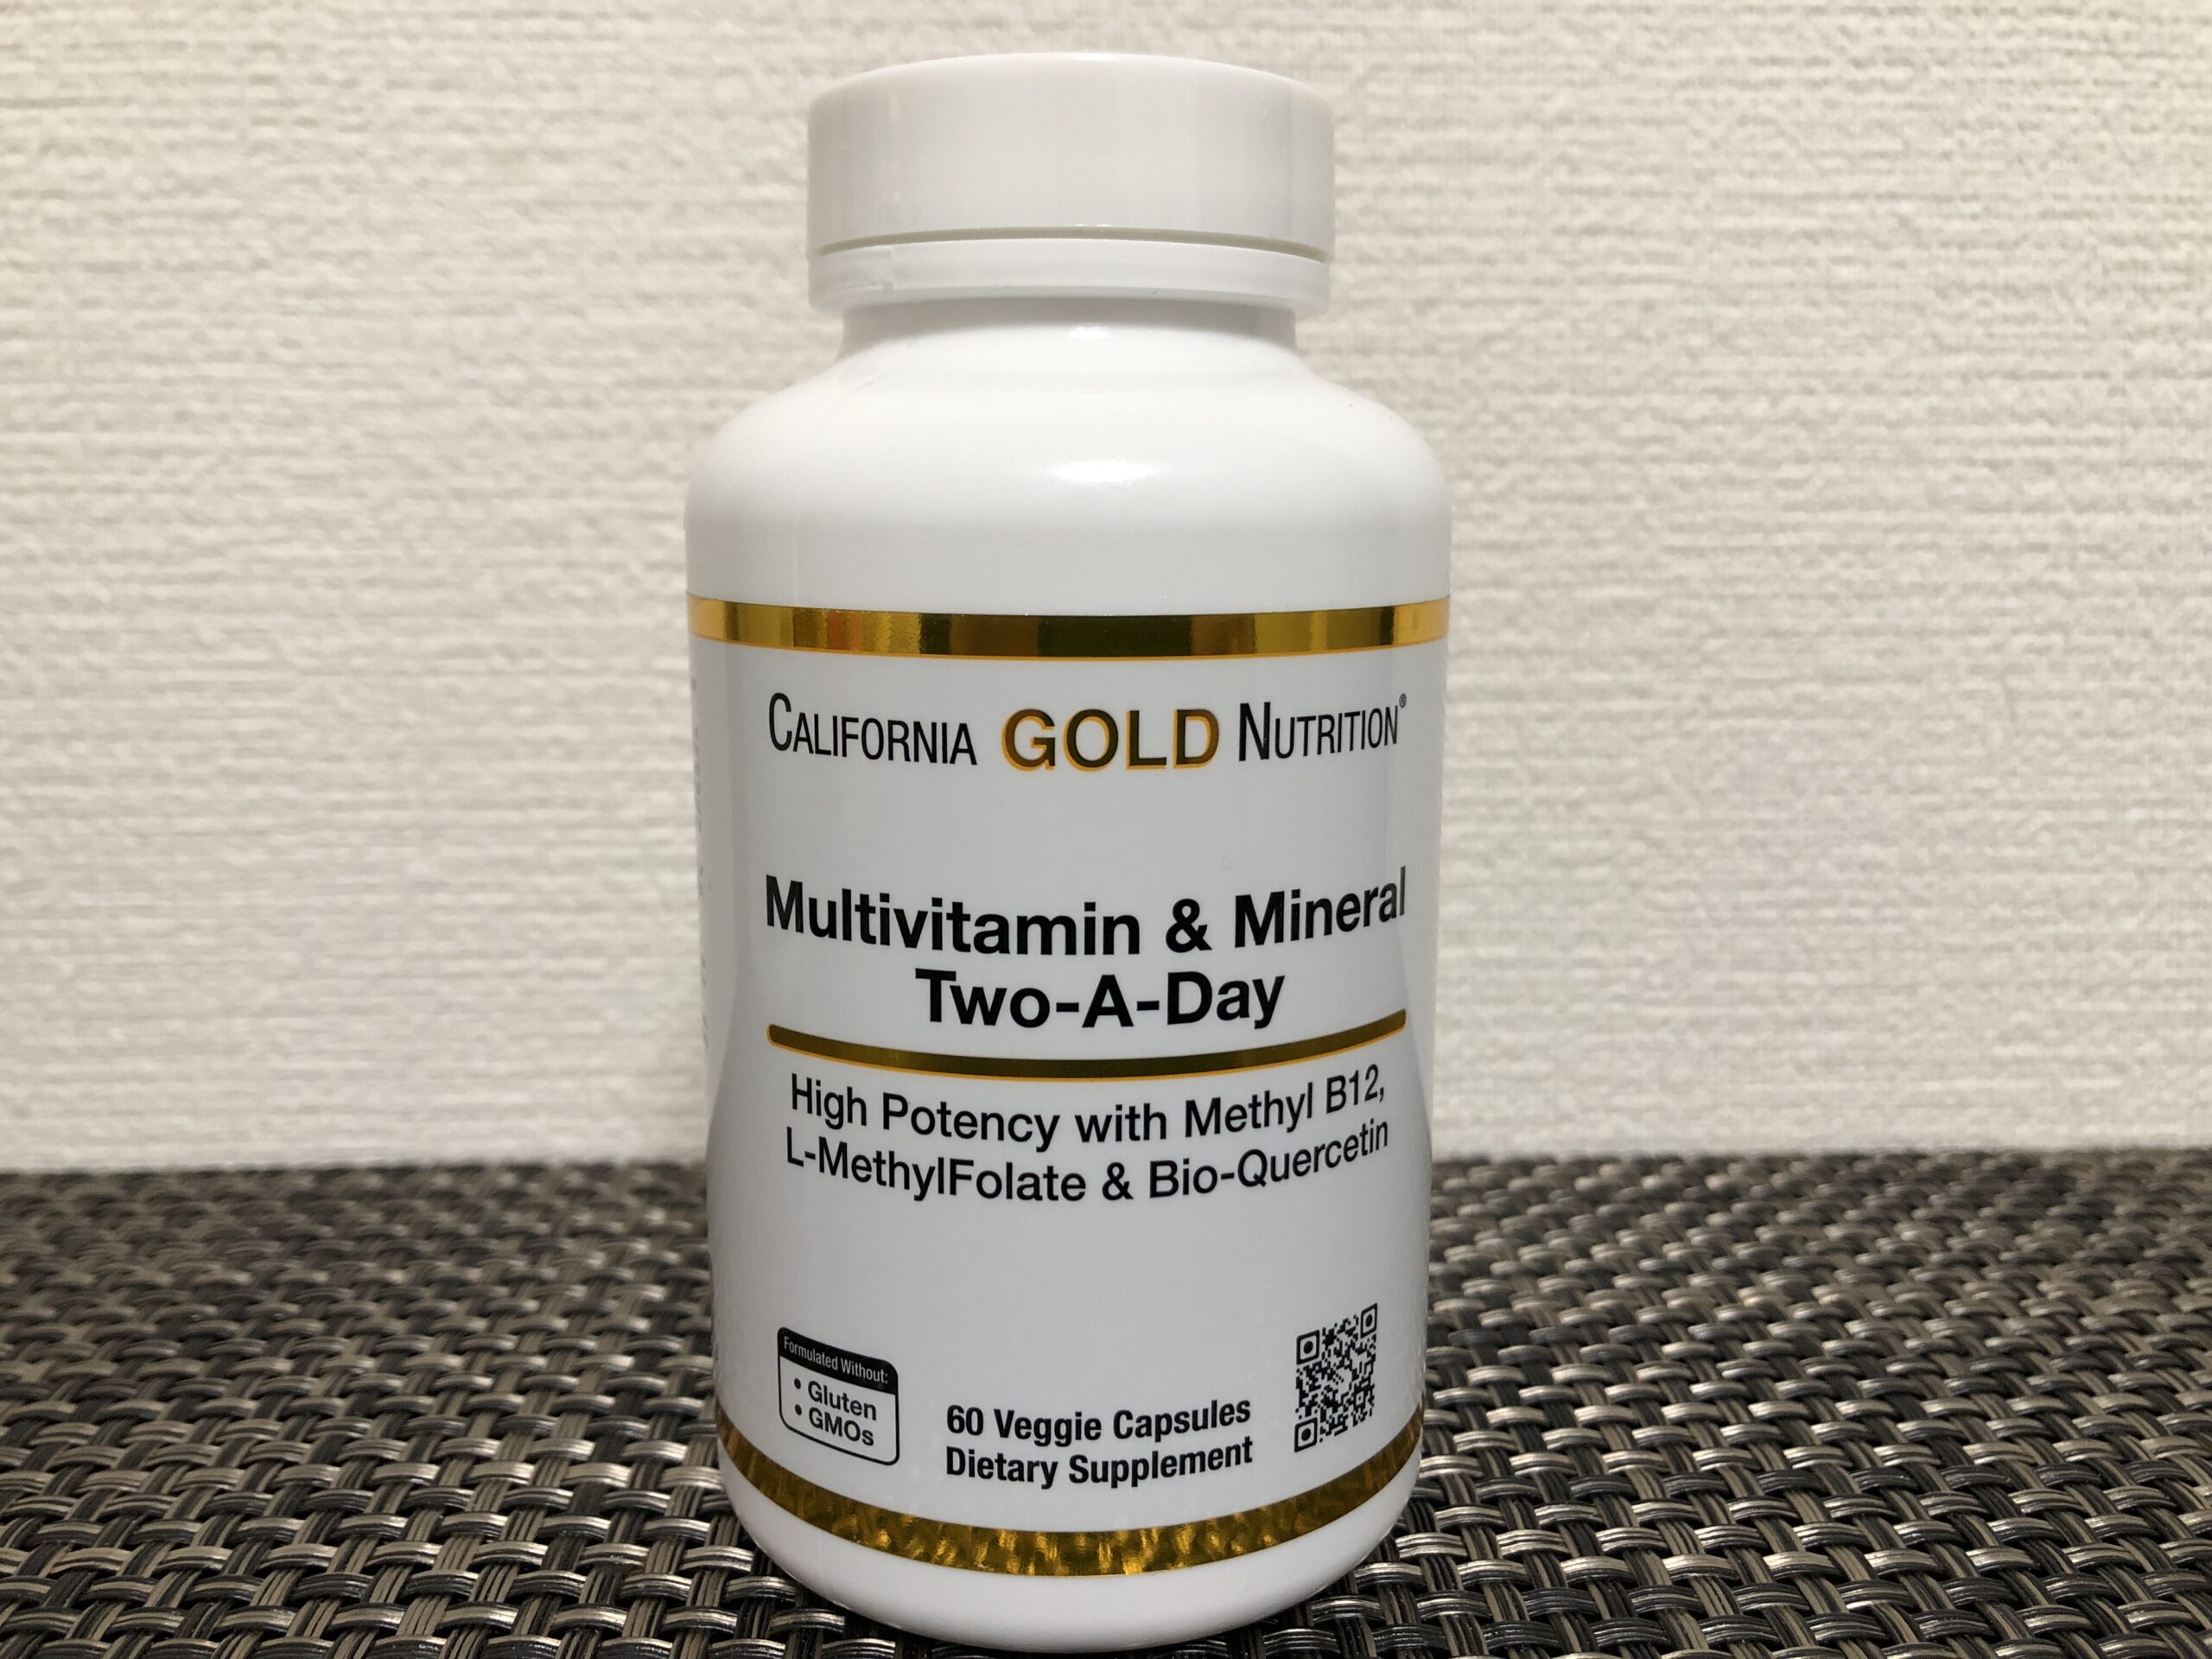 カリフォルニア・ゴールド・ニュートリション「マルチビタミン&ミネラル」